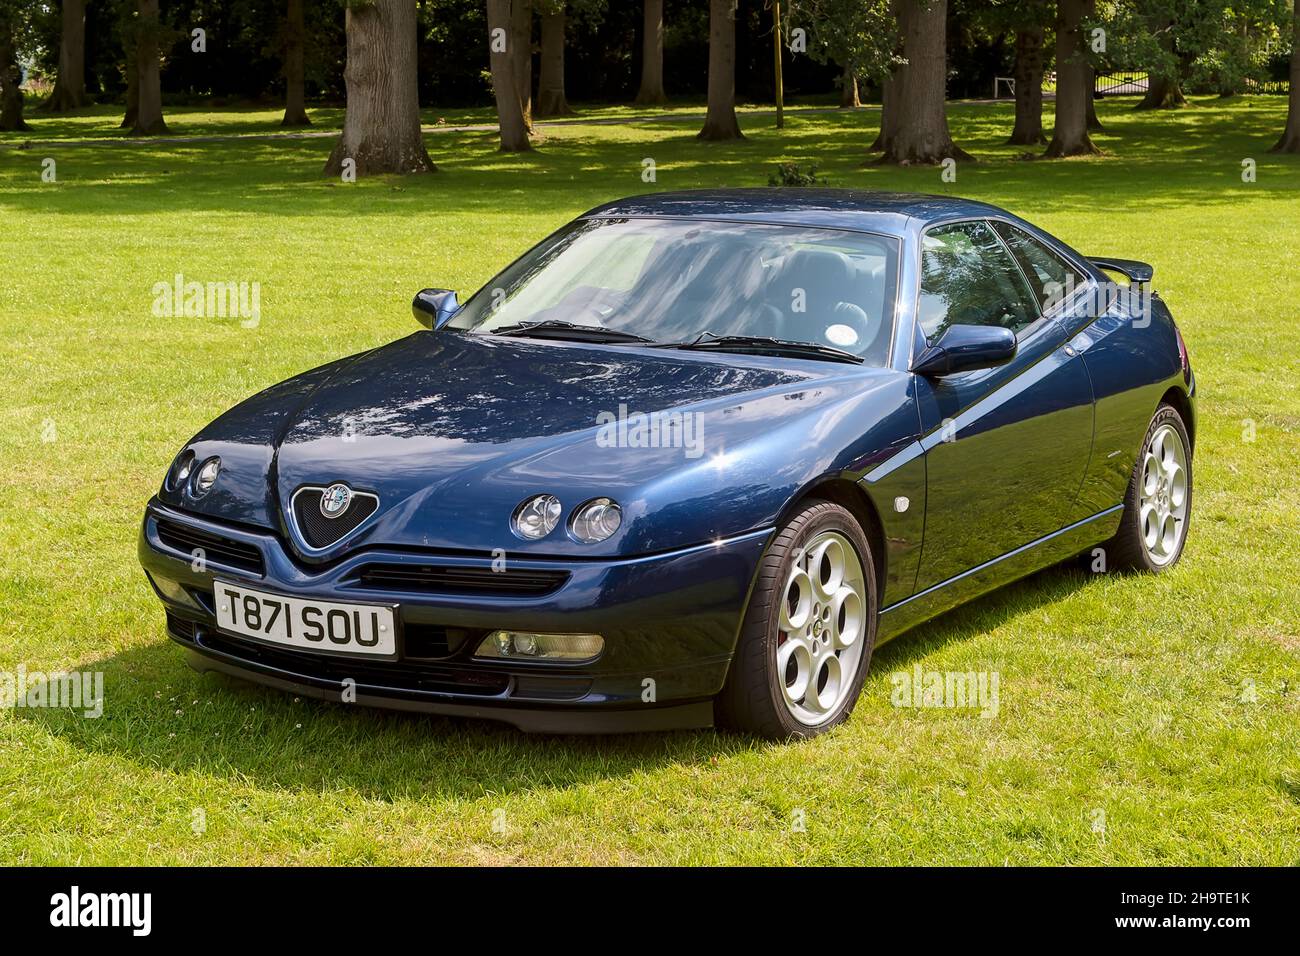 Longleat House, Wiltshire, Regno Unito - Luglio 25 2004: Un italiano Made 1999 Alfa Romeo GTV (Gran Turismo veloce) (fase 2) 2+2 vettura sportiva Coupe. Foto Stock